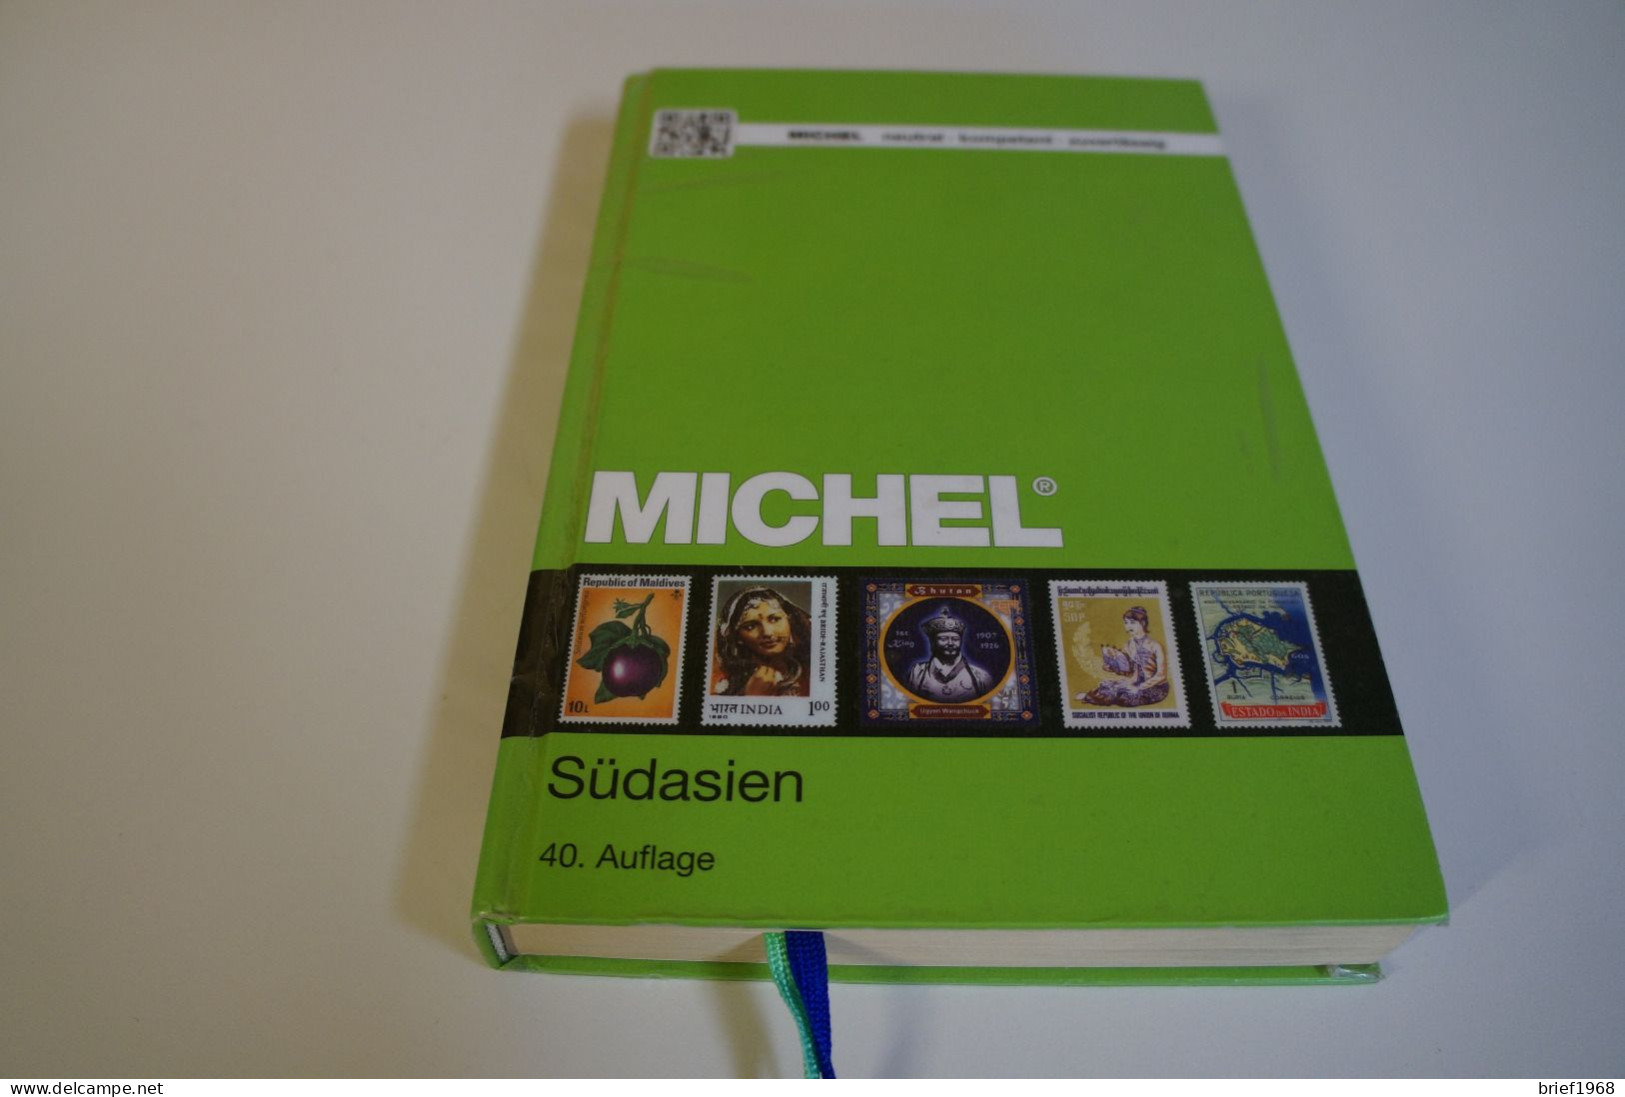 Michel Südasien, 40. Auflage (27245) - Alemania